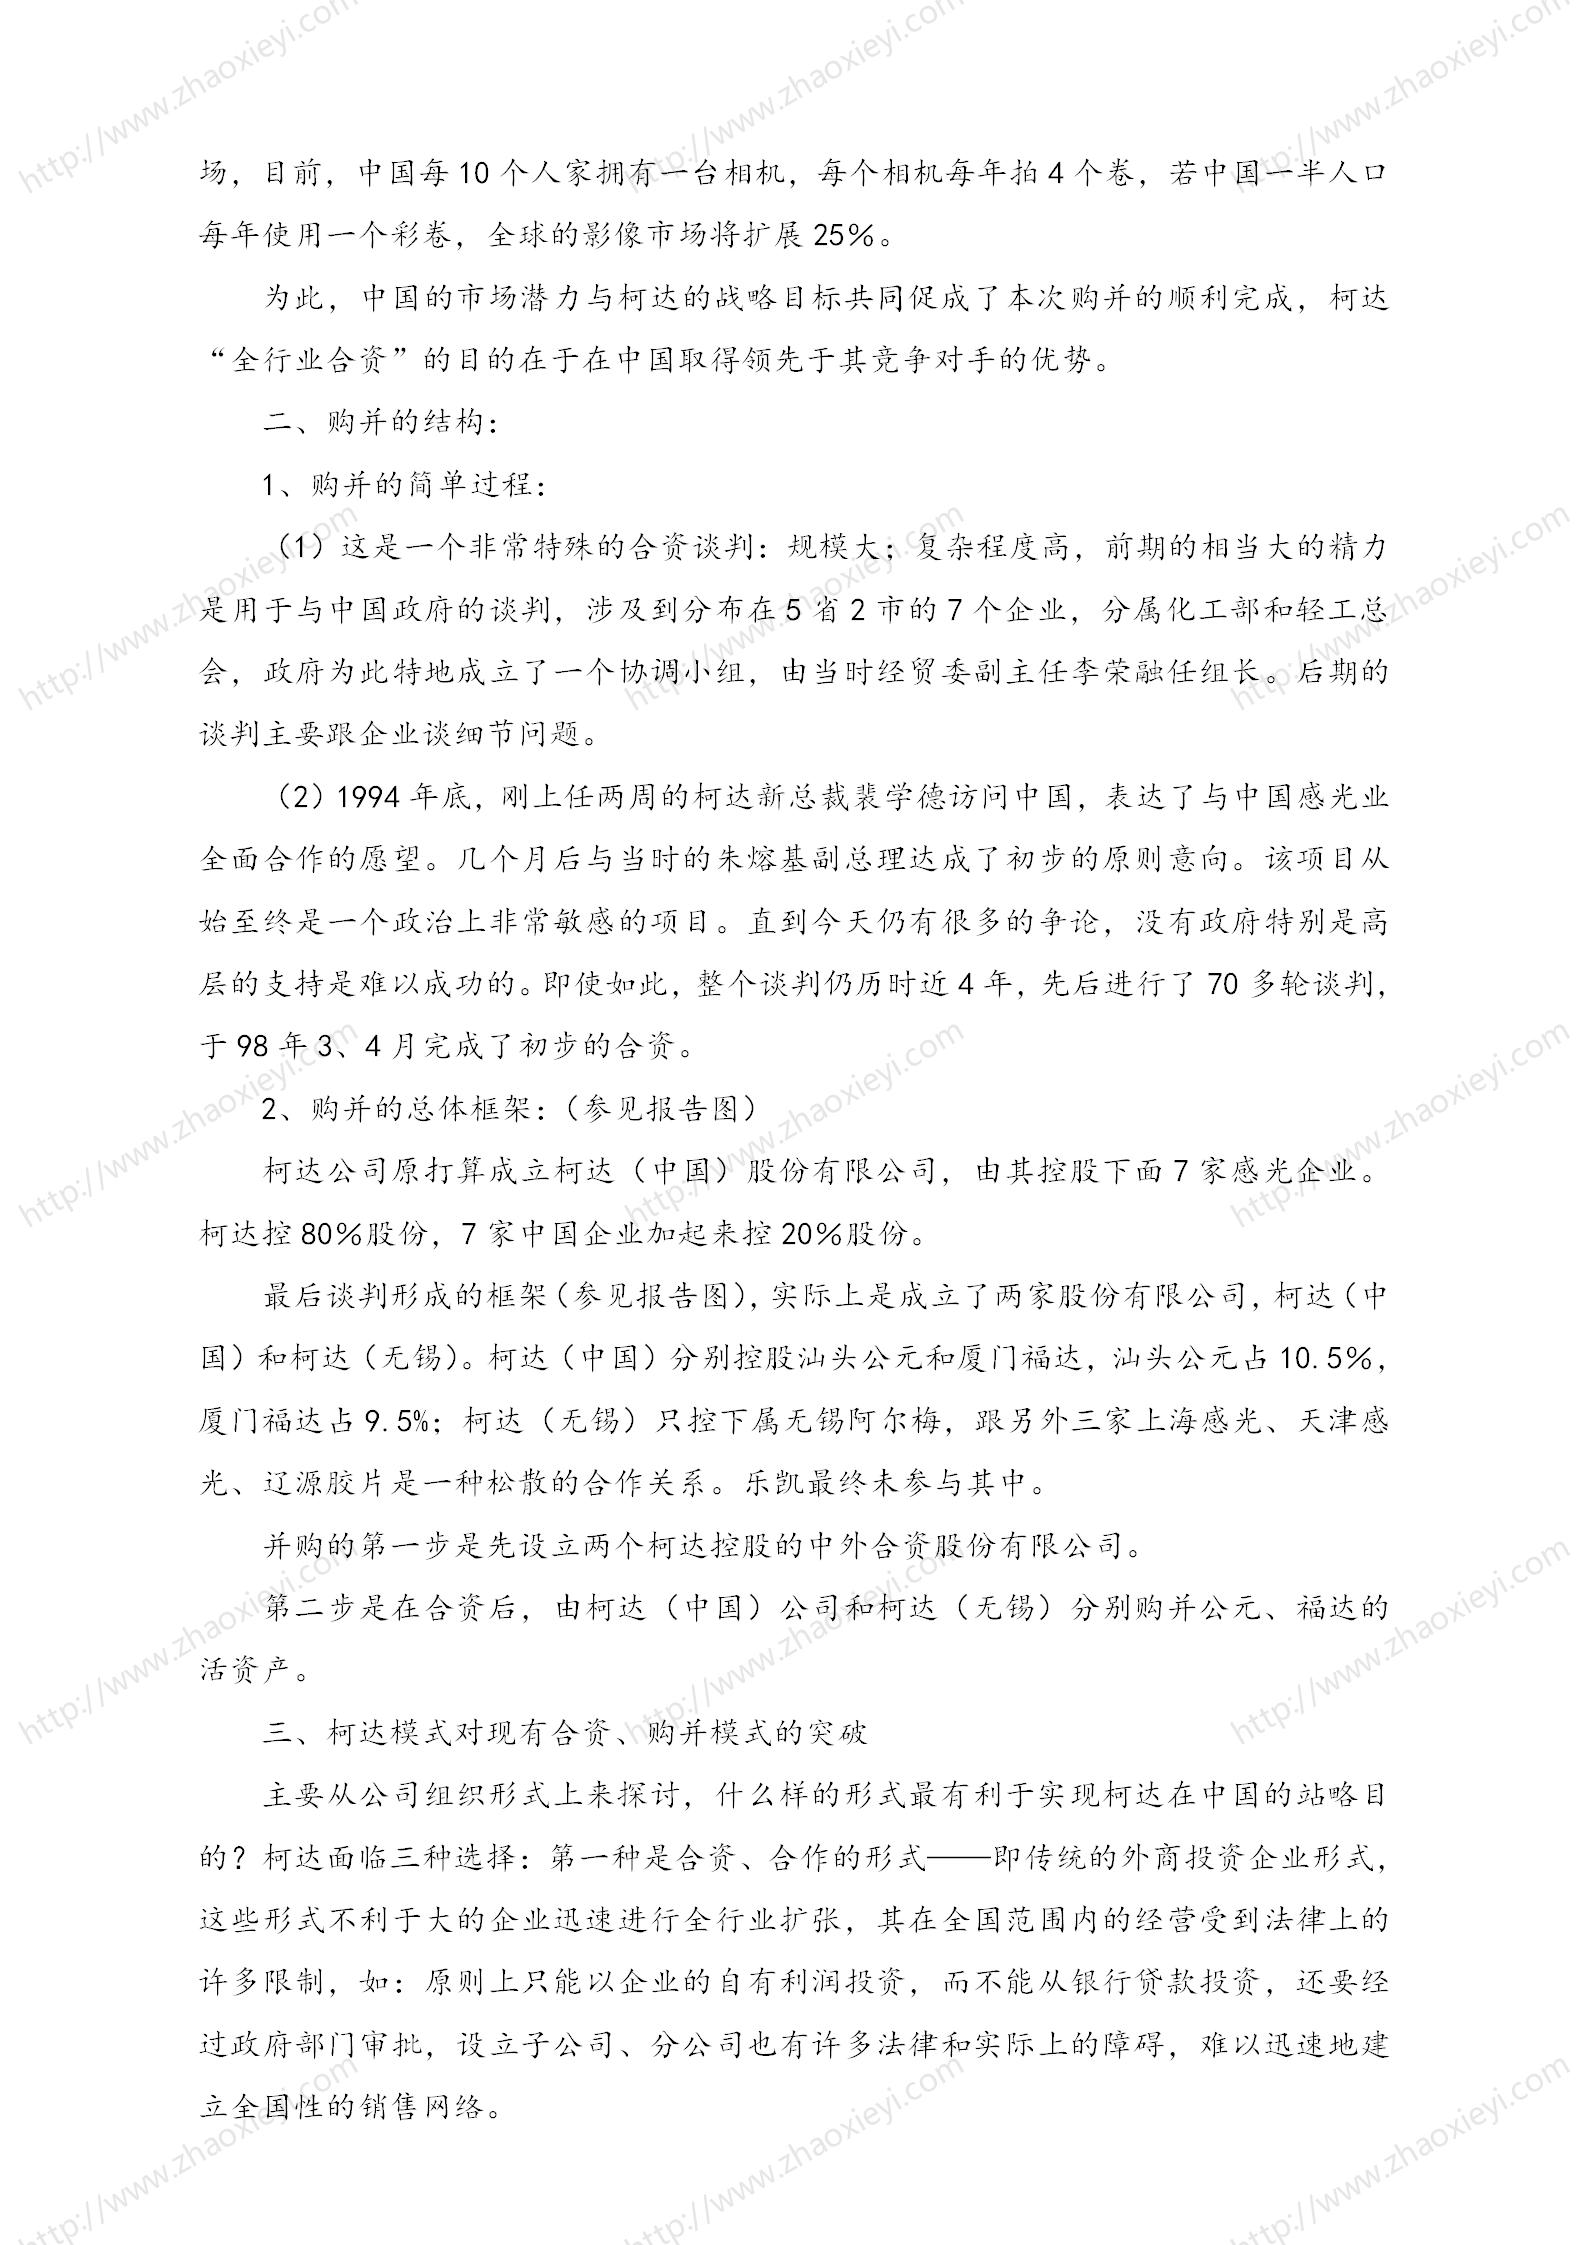 中国企业并购经典案例_157.jpg